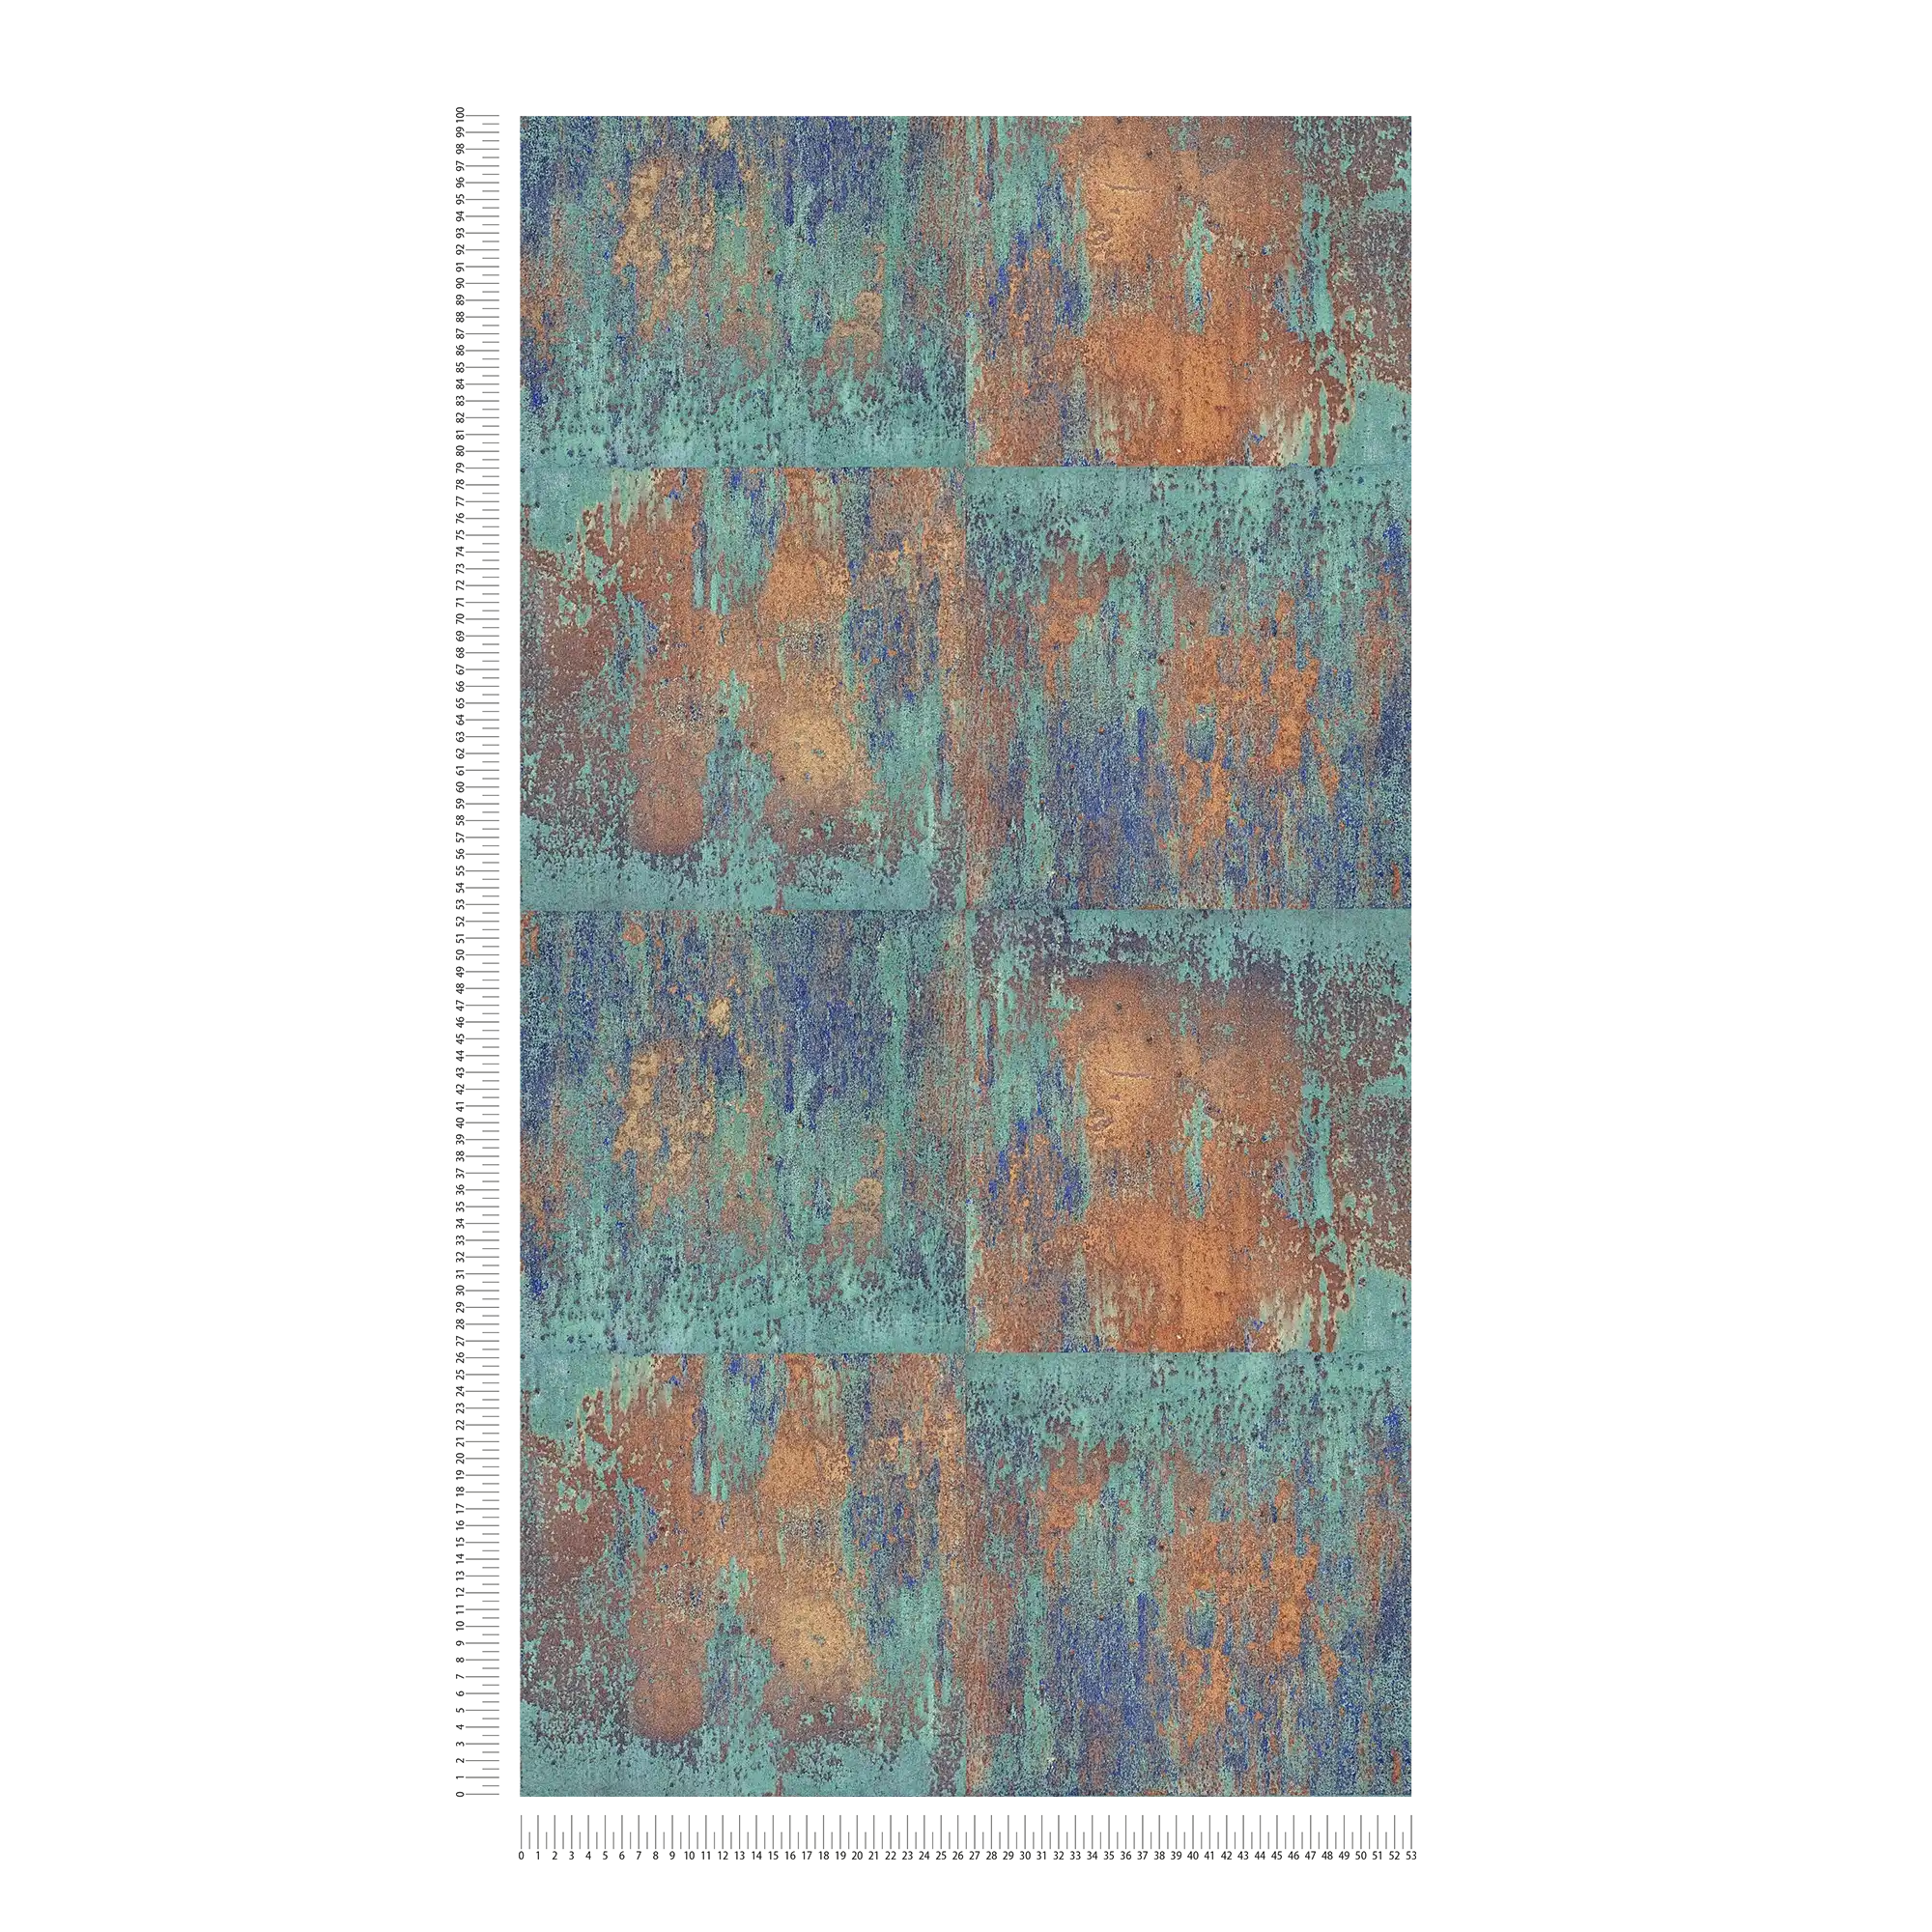             Vliestapete Patina-Design mit Rost und Kupfereffekten – Blau, Braun, Kupfer
        